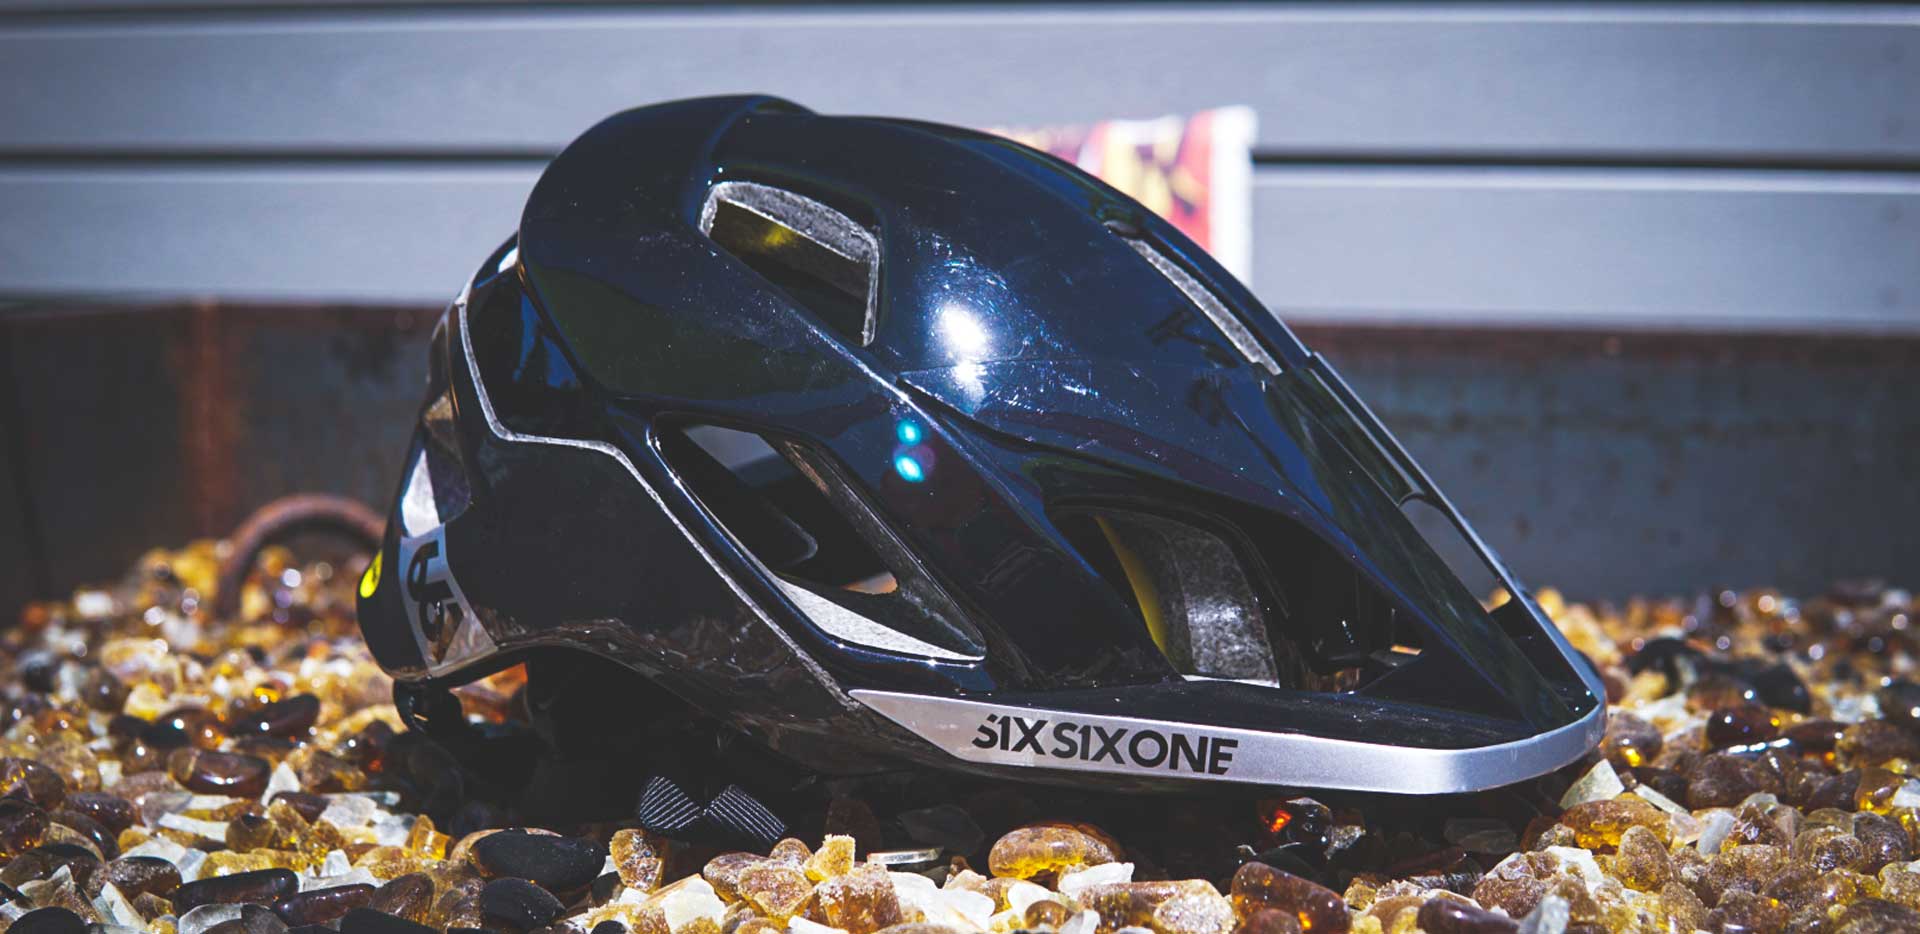 Six Six One Evo AM Helmet Review